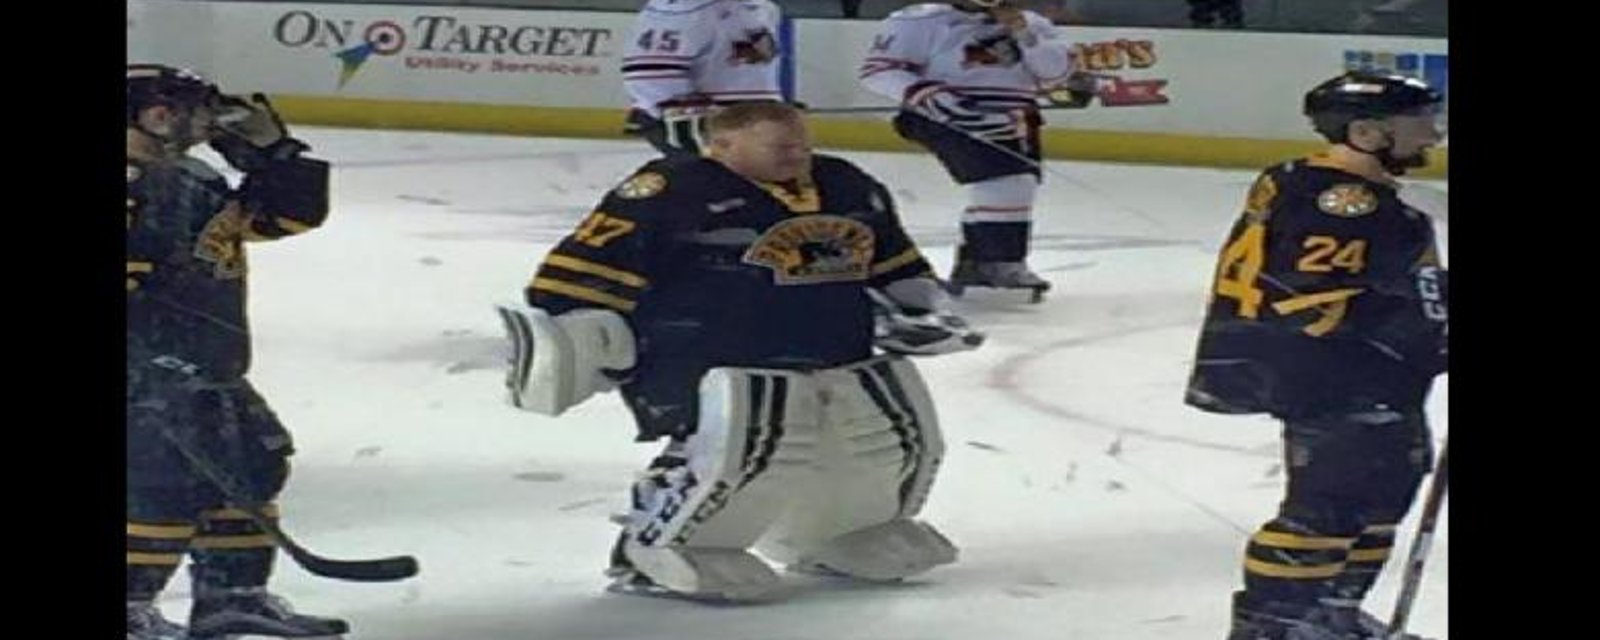 Les Bruins de Providence utilisent un gardien de ligue de garage!